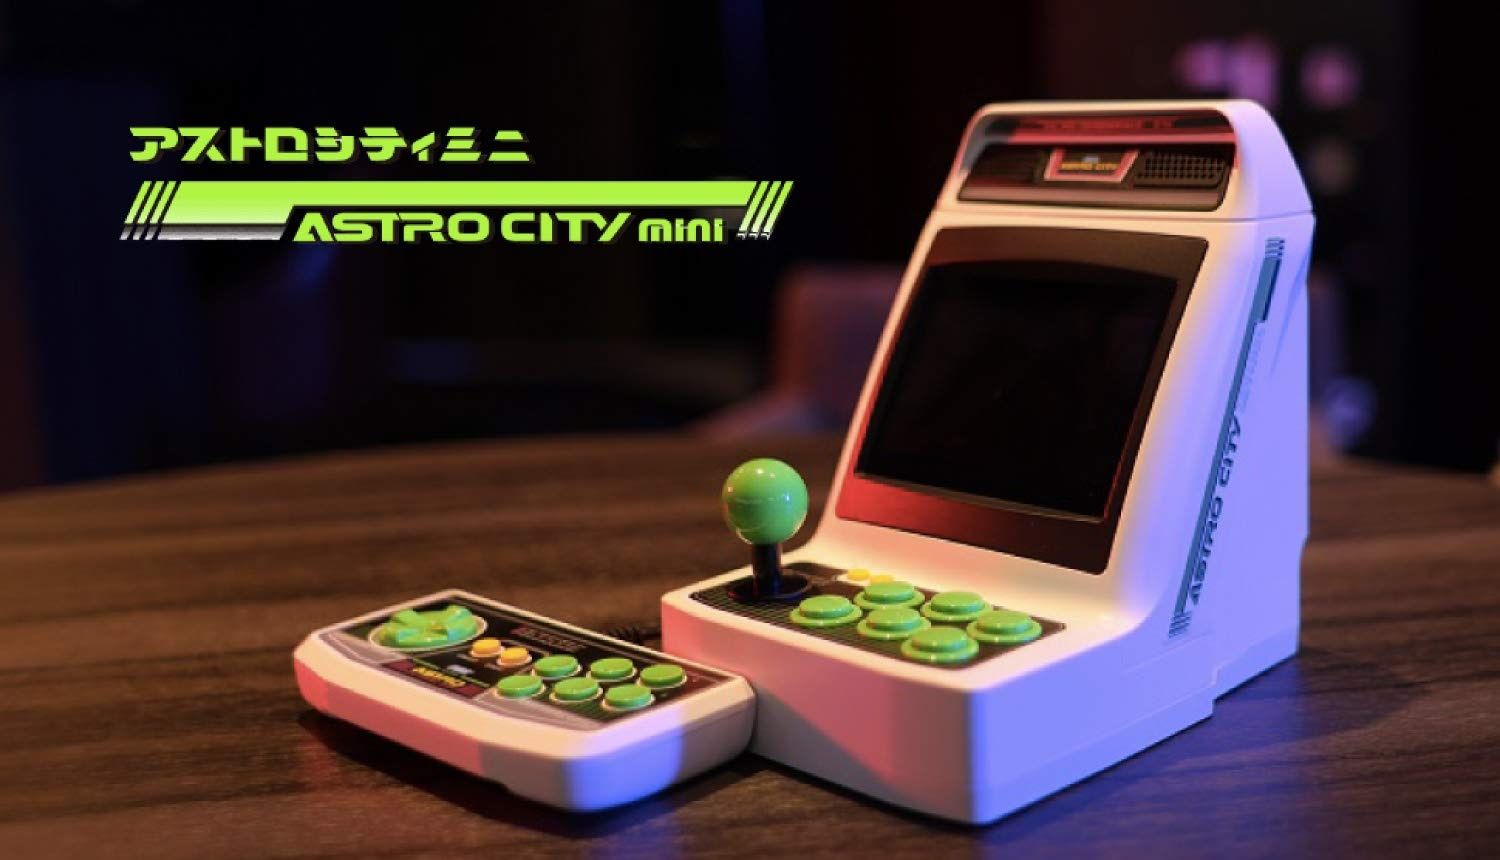 Sega Astro City Mini with additional controller